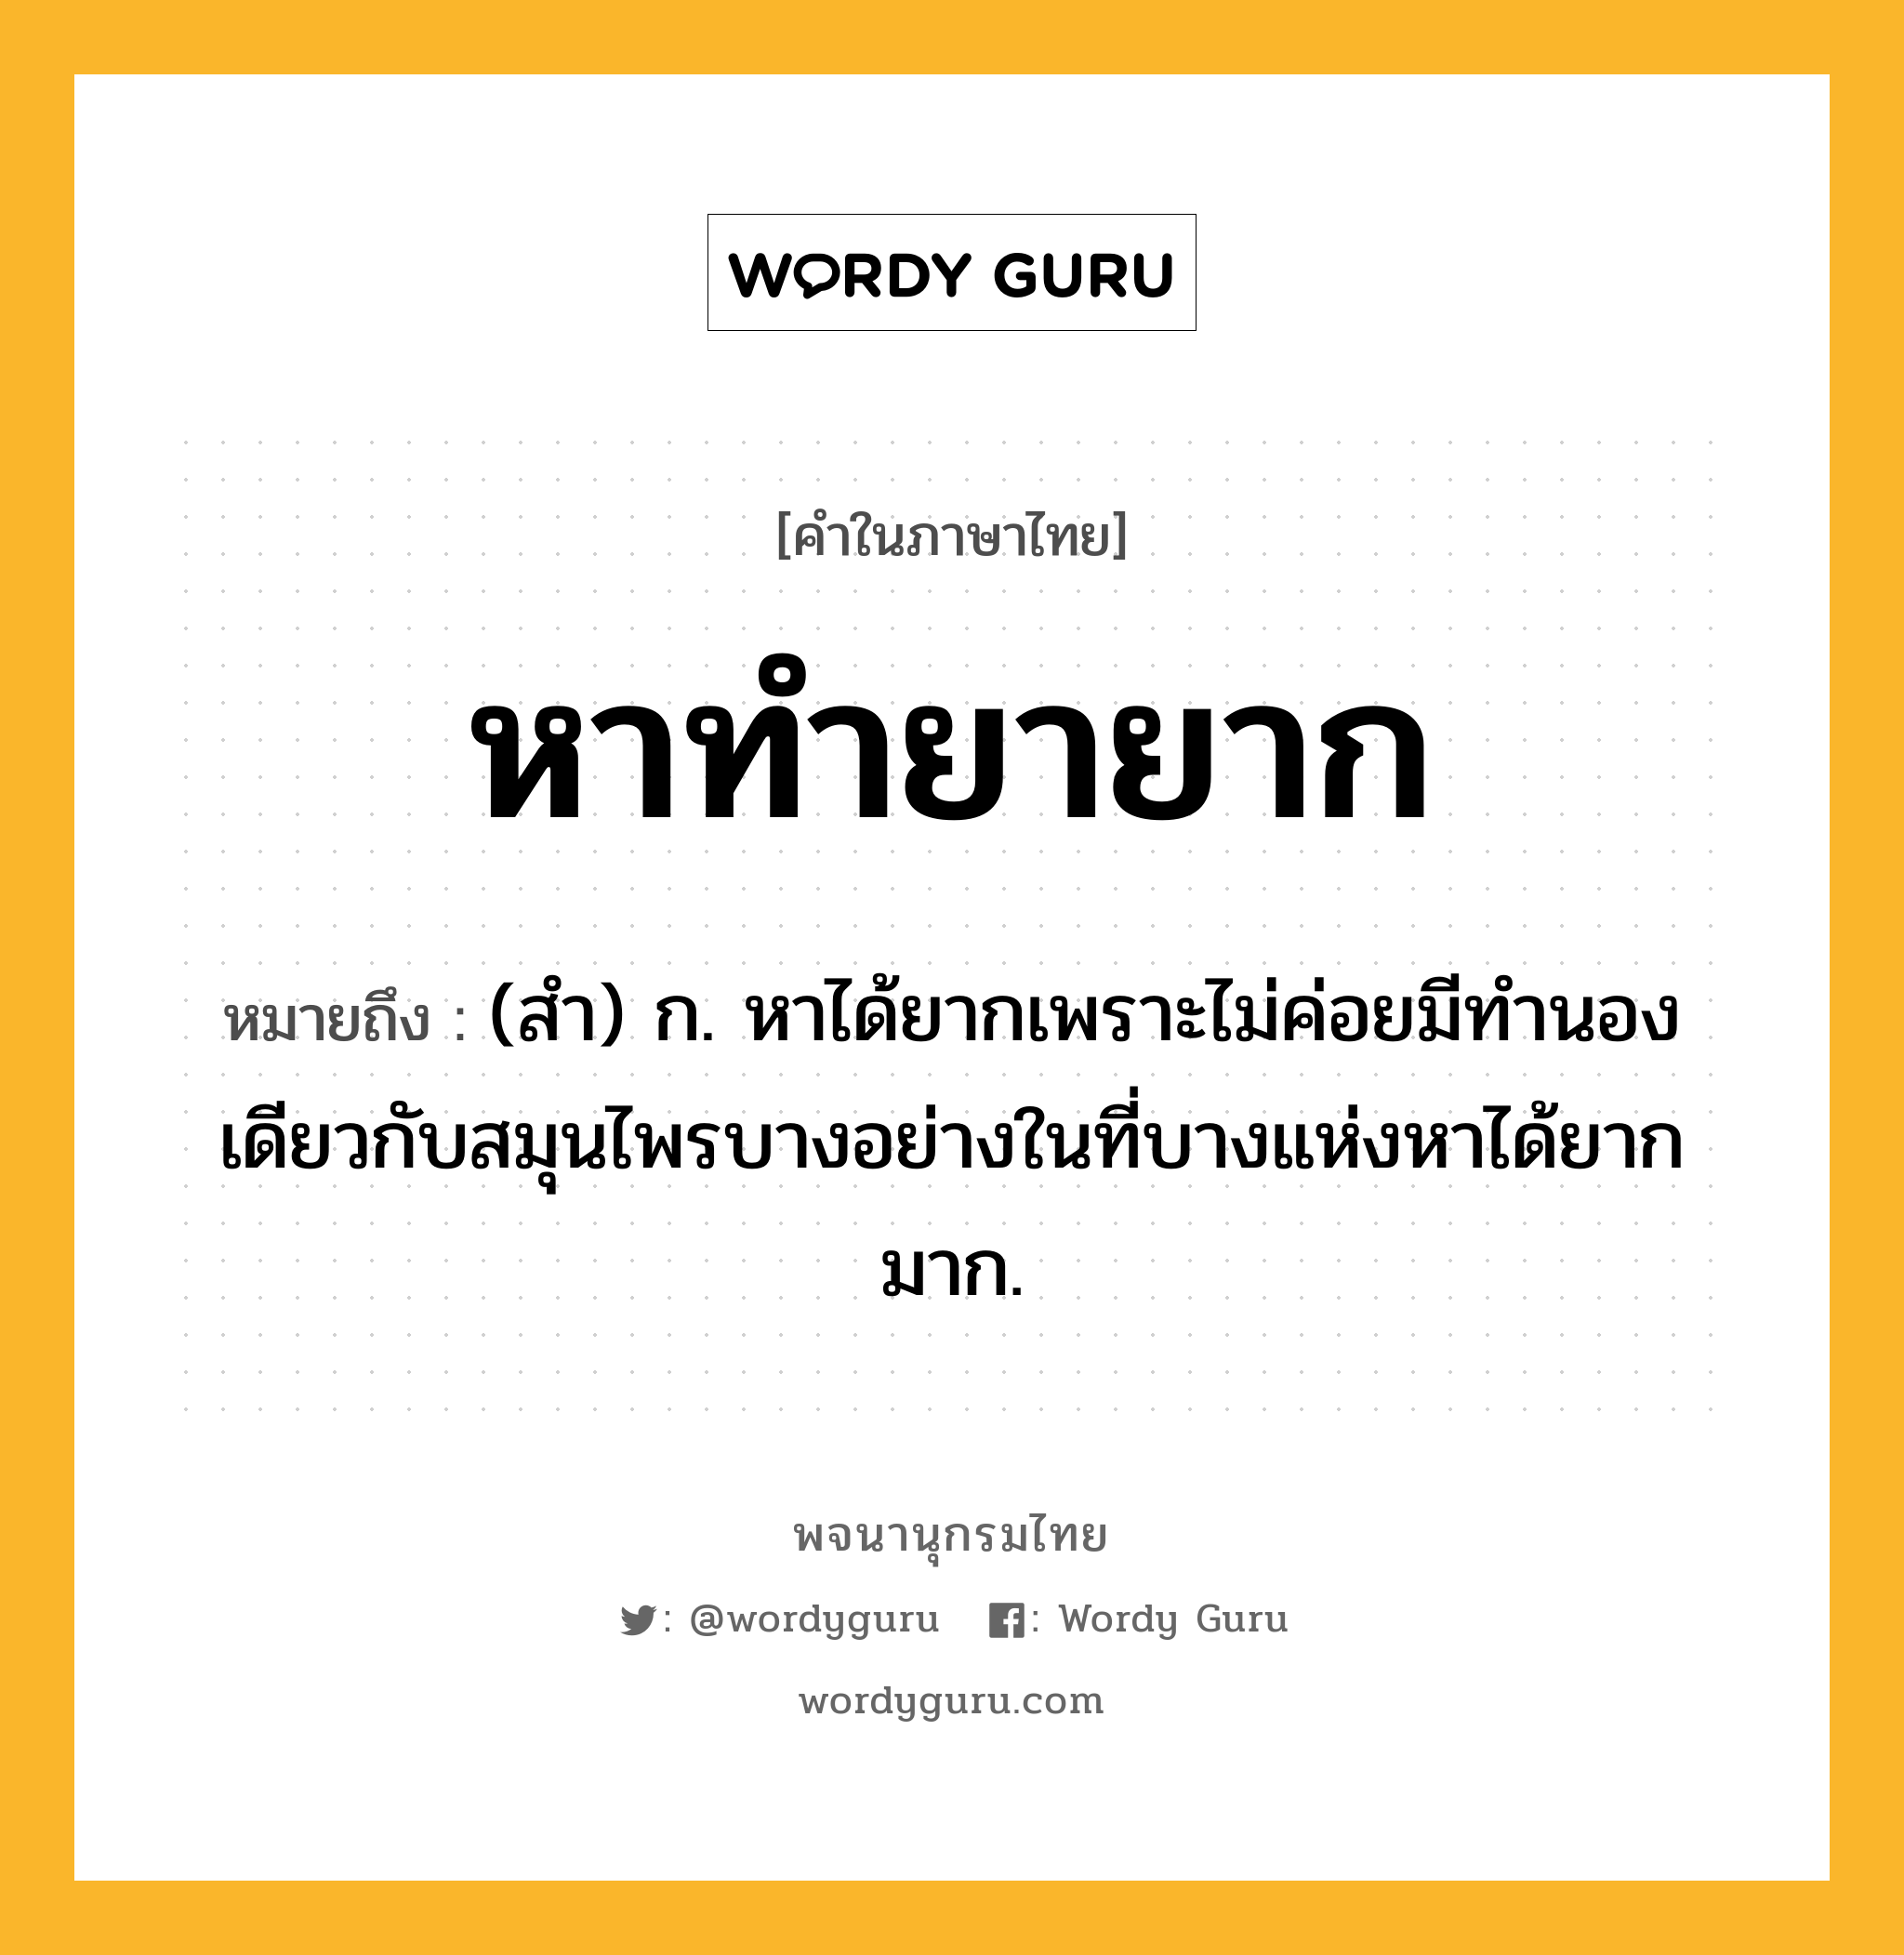 หาทำยายาก ความหมาย หมายถึงอะไร?, คำในภาษาไทย หาทำยายาก หมายถึง (สำ) ก. หาได้ยากเพราะไม่ค่อยมีทำนองเดียวกับสมุนไพรบางอย่างในที่บางแห่งหาได้ยากมาก.